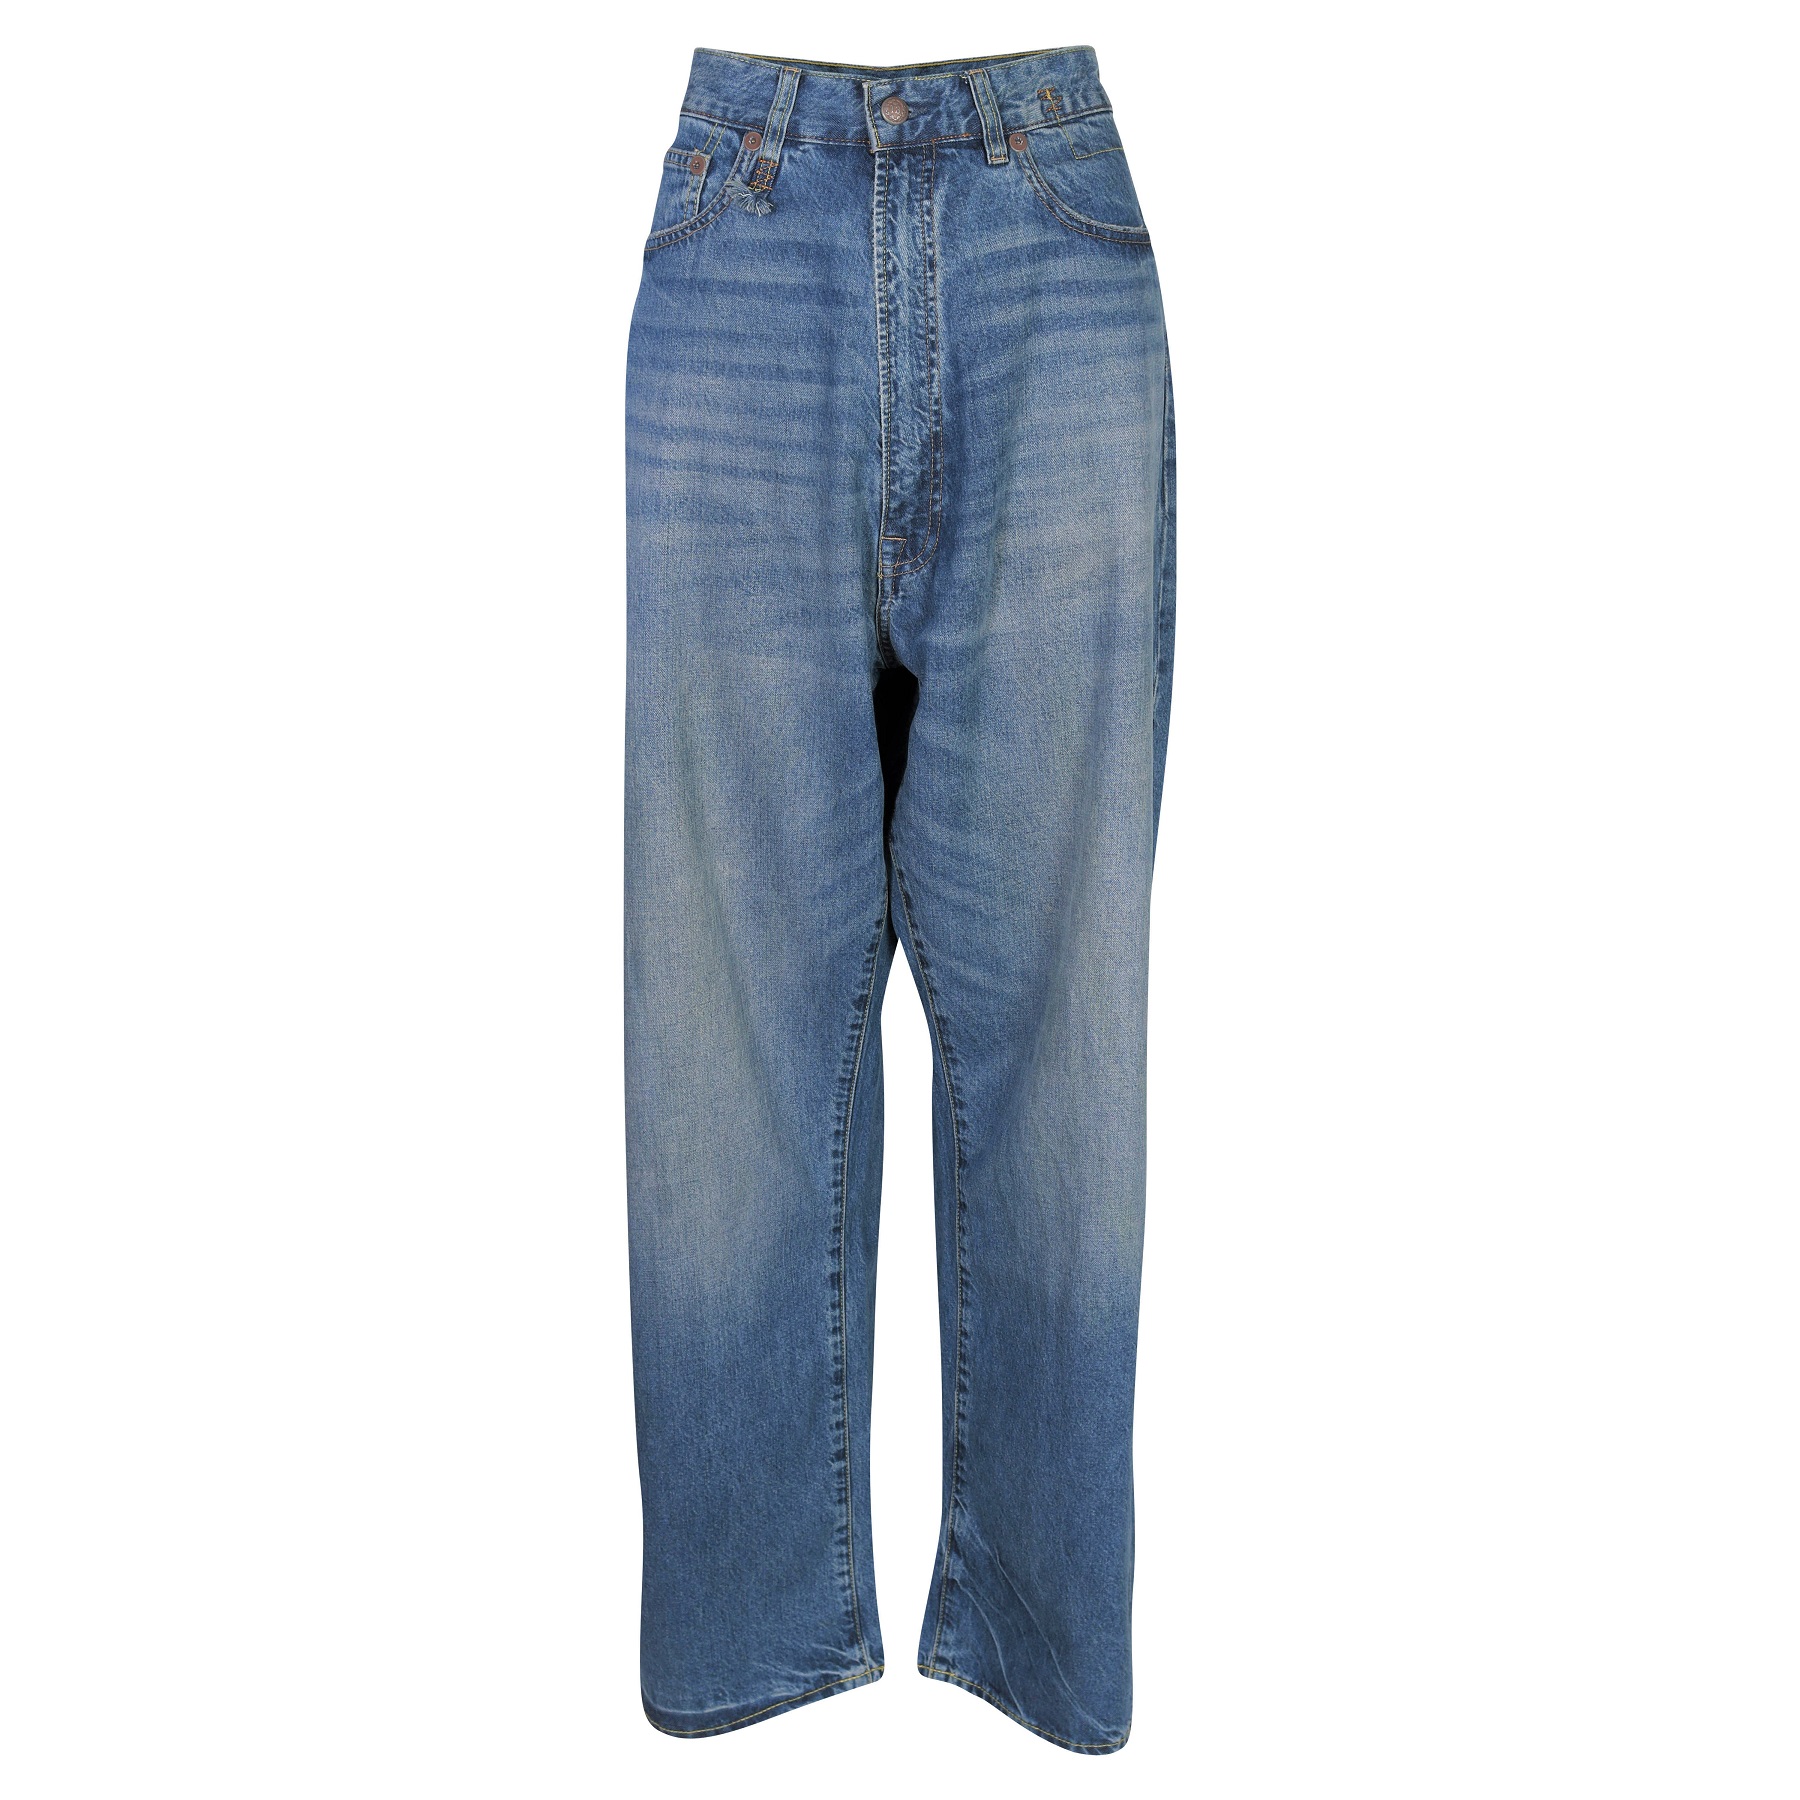 R13 Venti Jeans in Alan Blue 29